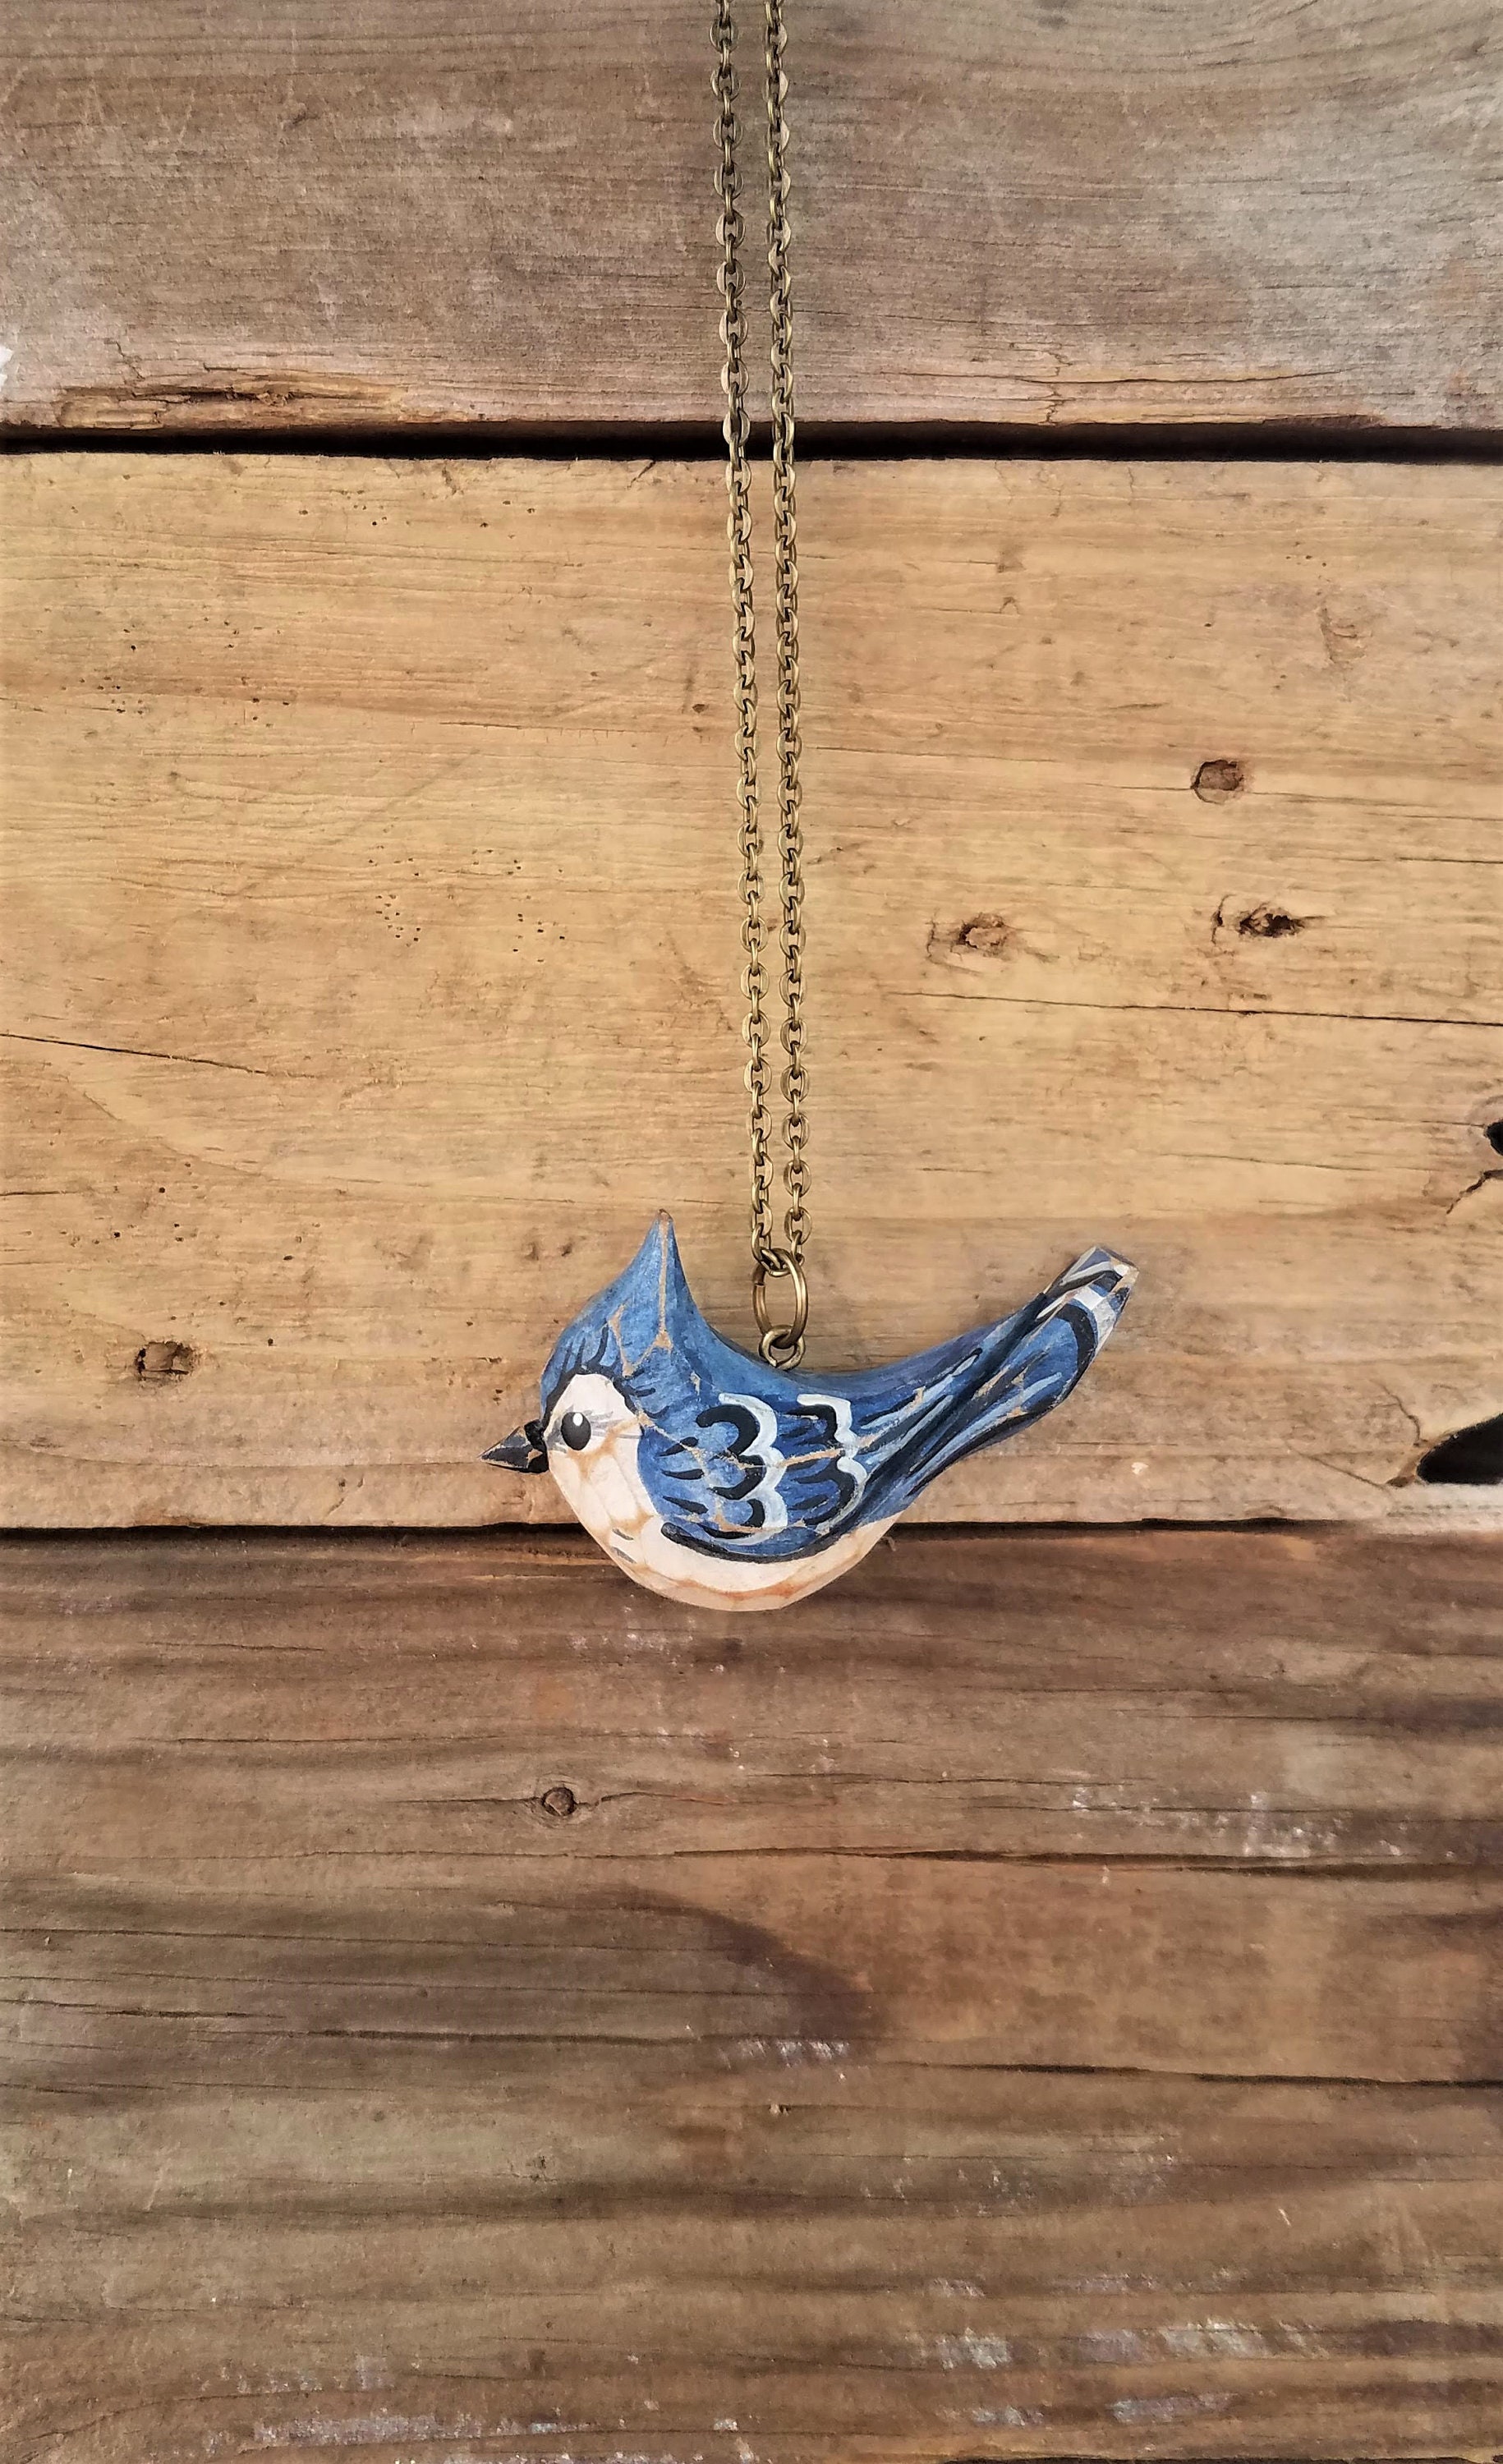 Ribbon Necklace Blue Jay / Shiny